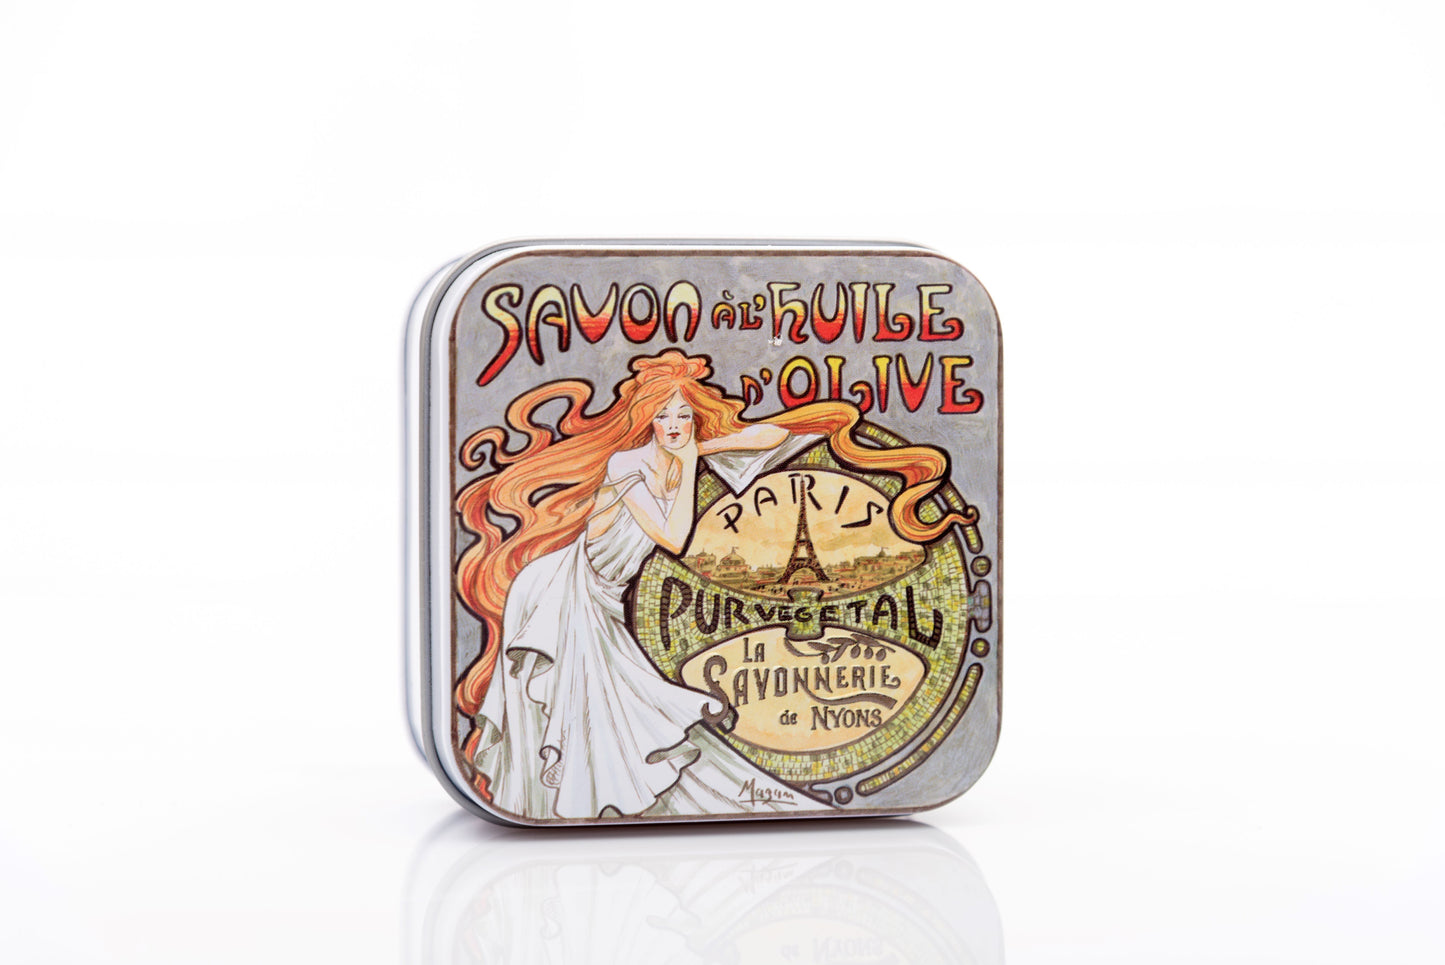 Almond-Scented Soap in "Mucha 2" Tin Box 3.5 oz